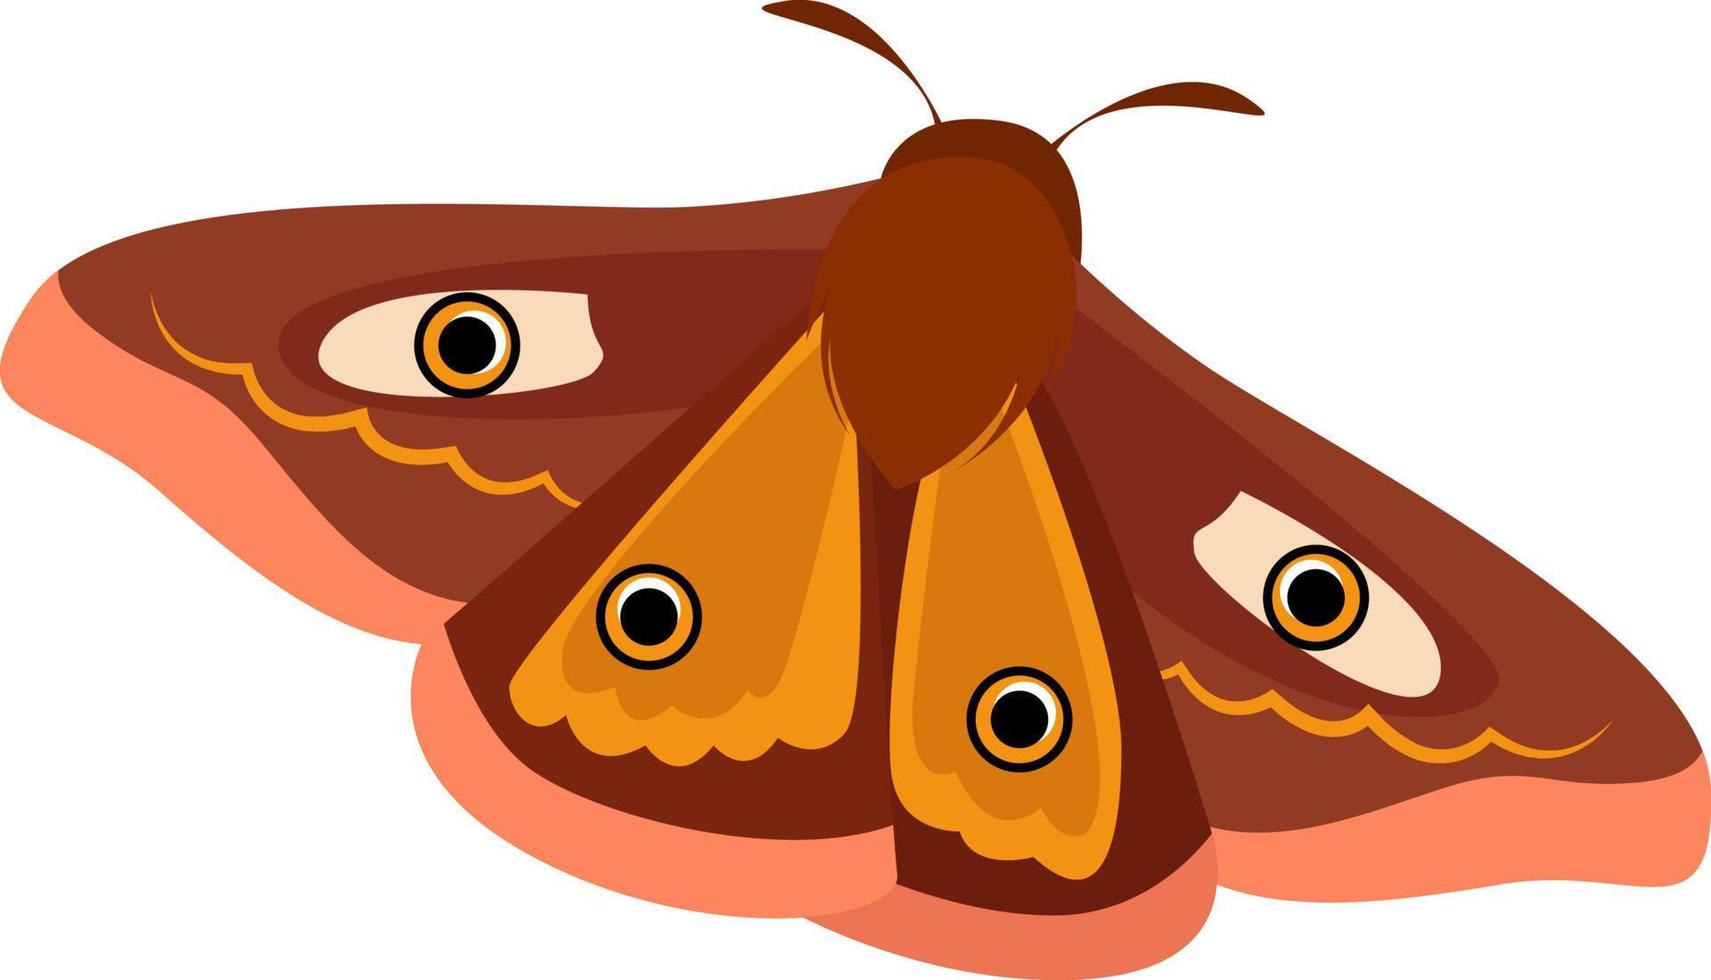 borboleta marrom, ilustração, vetor em fundo branco